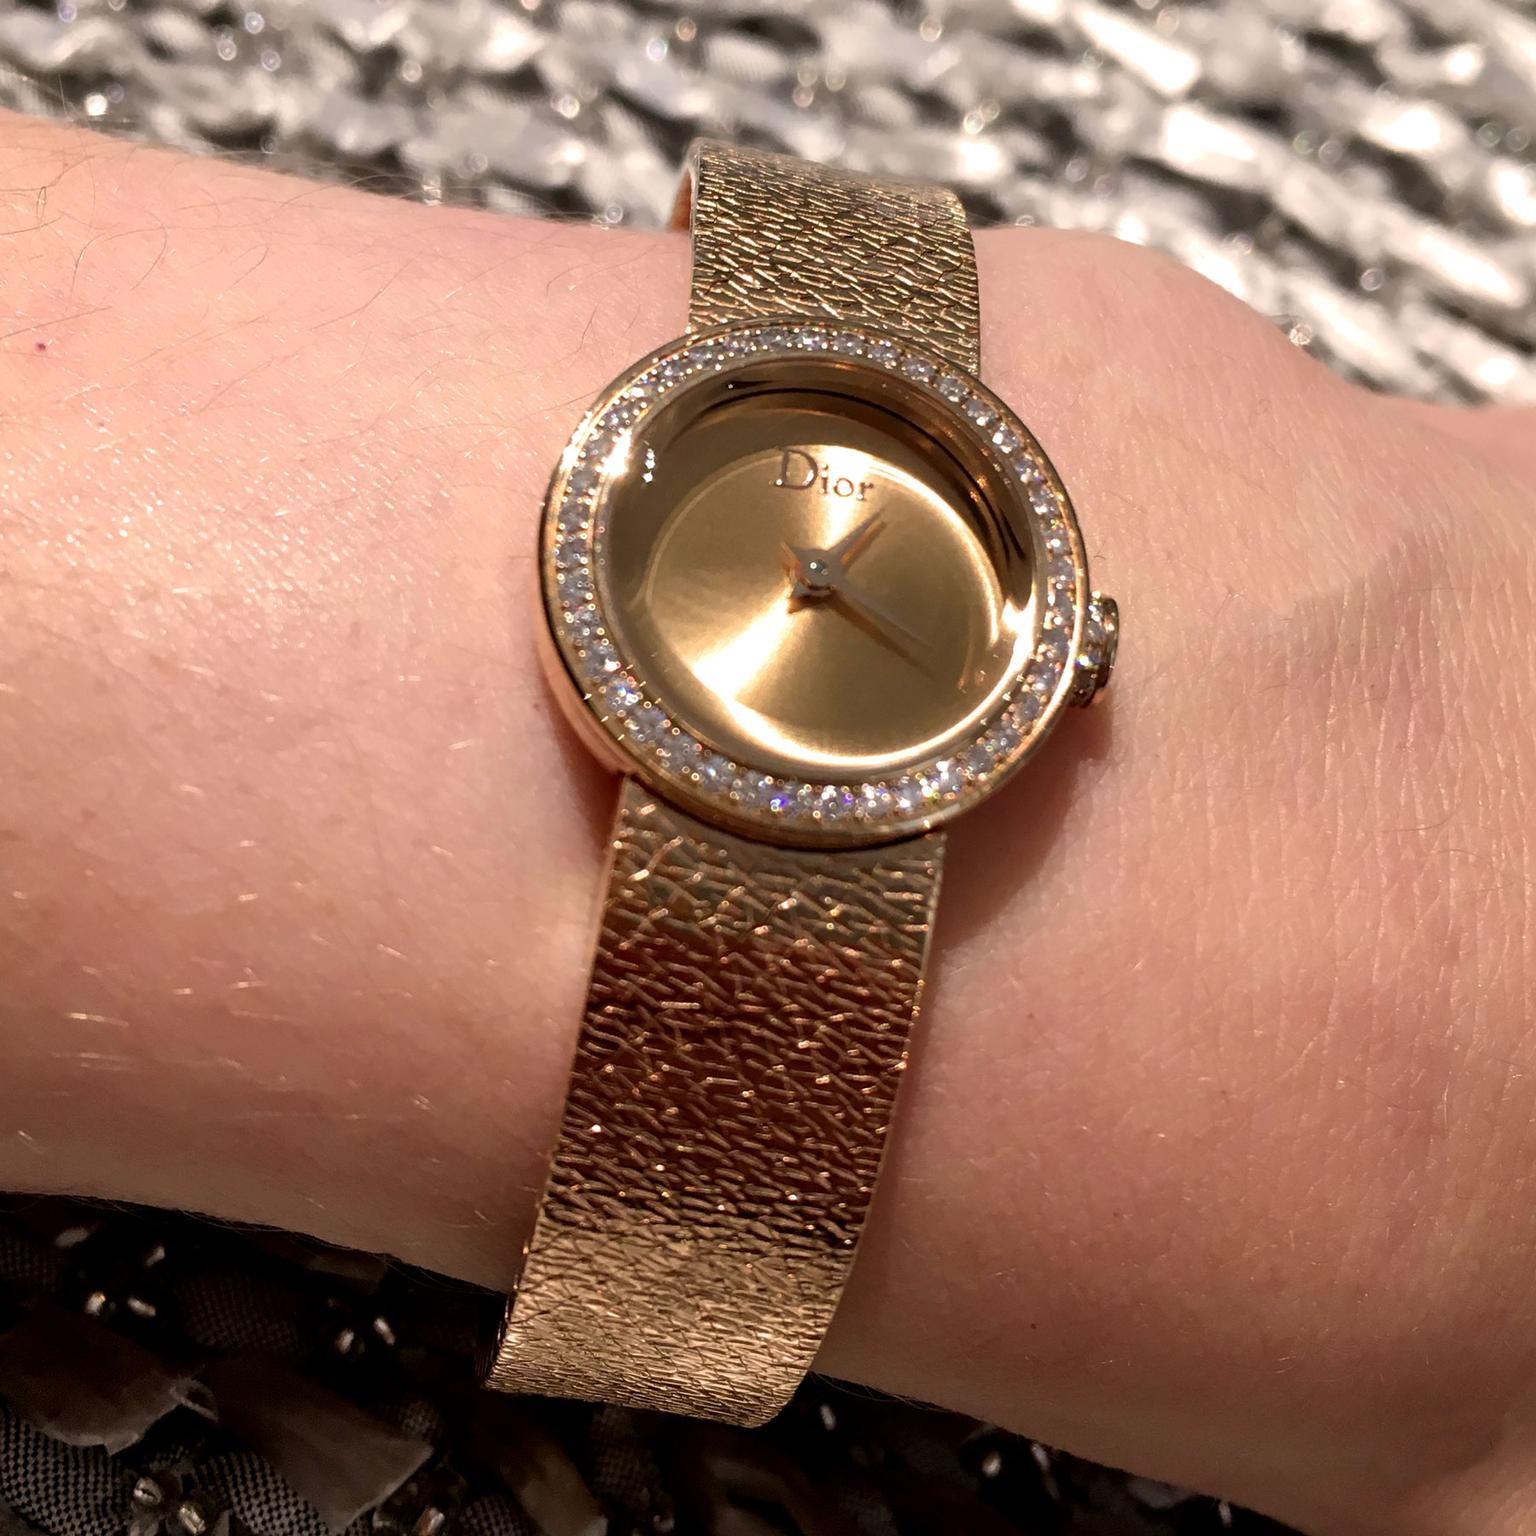 La Mini D de Dior watch